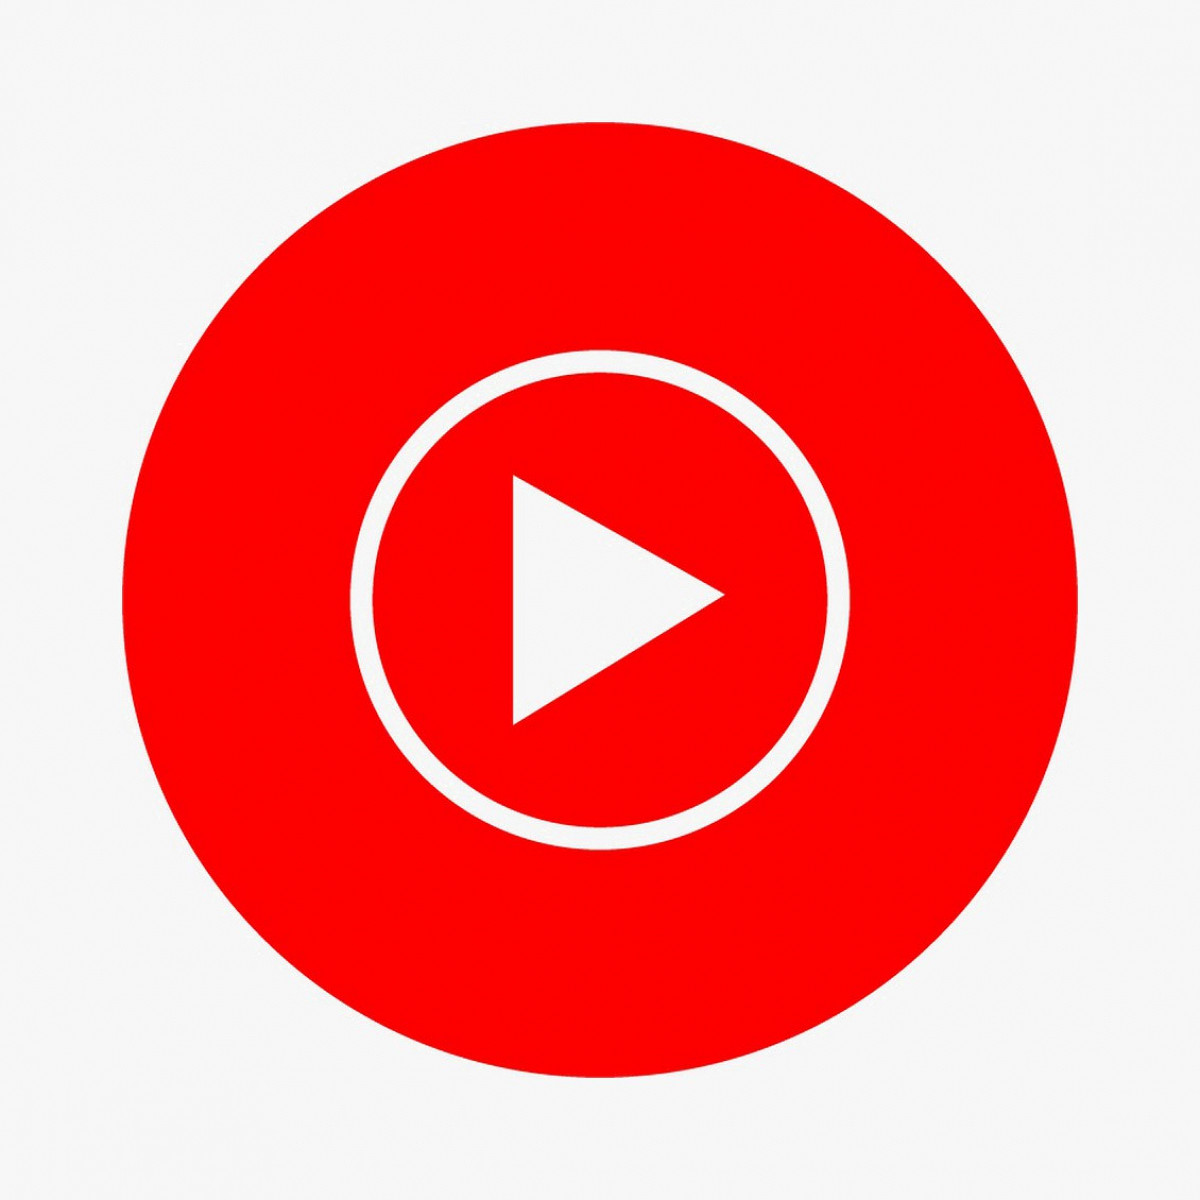 Ограничения по типам контента для монетизации - Cправка - YouTube